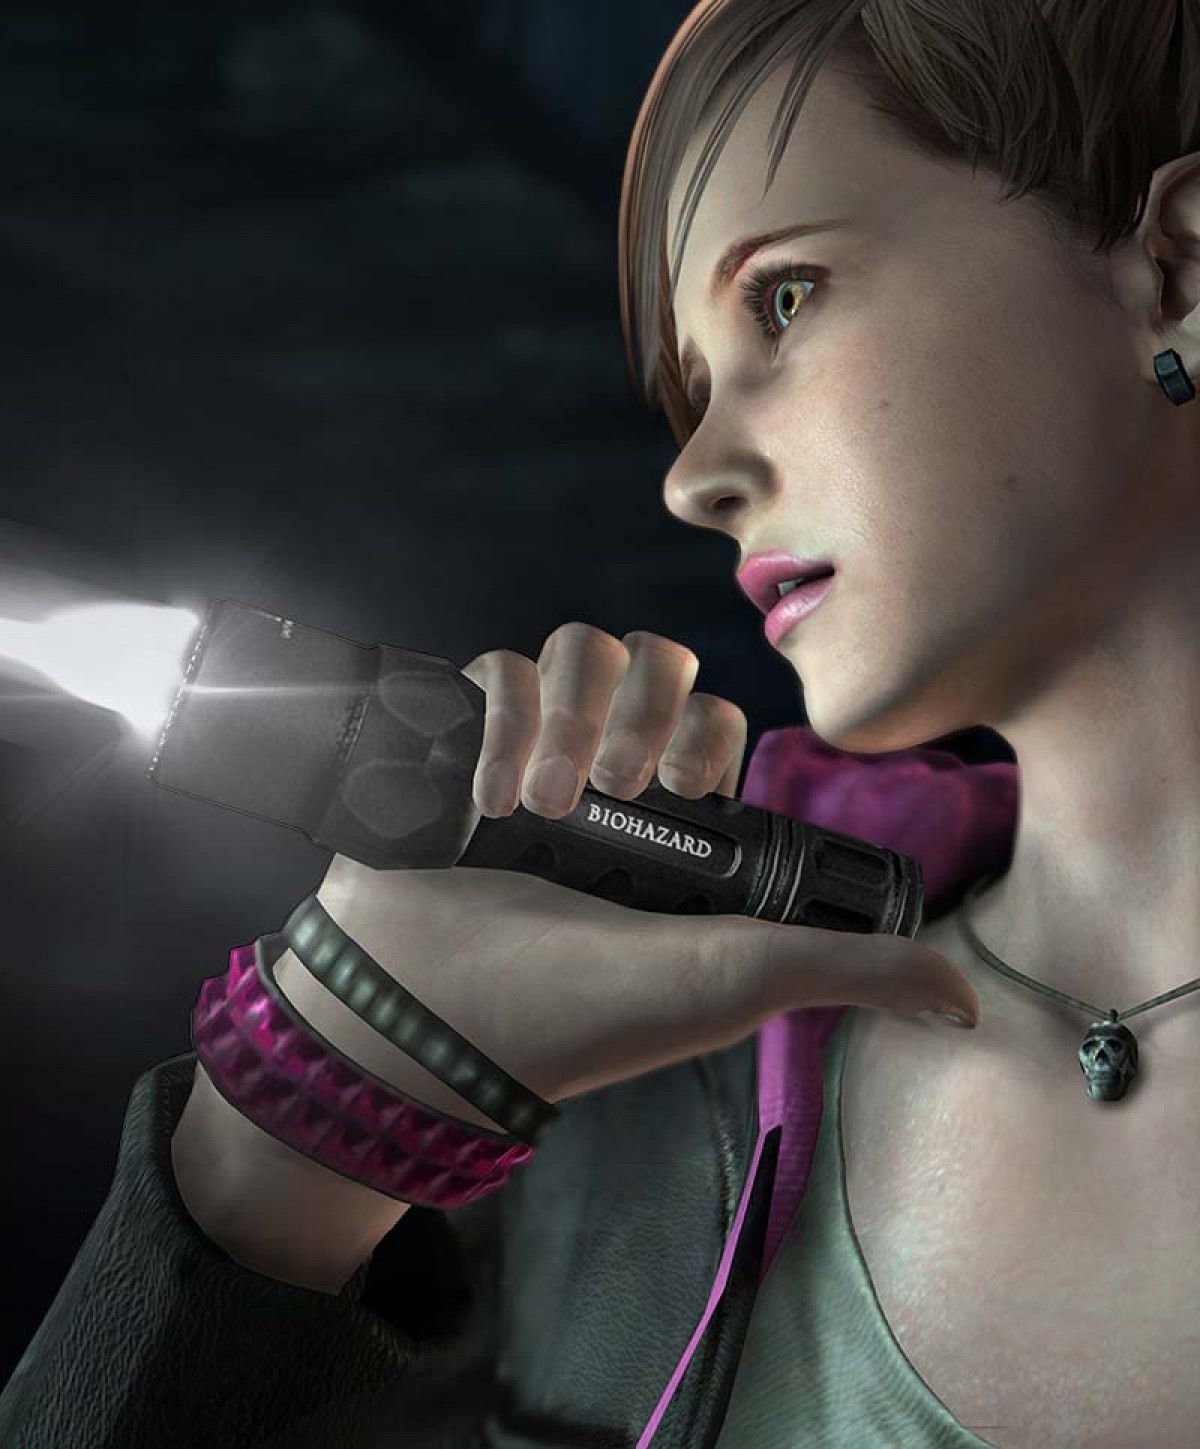 Resident Evil: revelations 2 - Moira Barton - (20 pictures) - erotic. 2